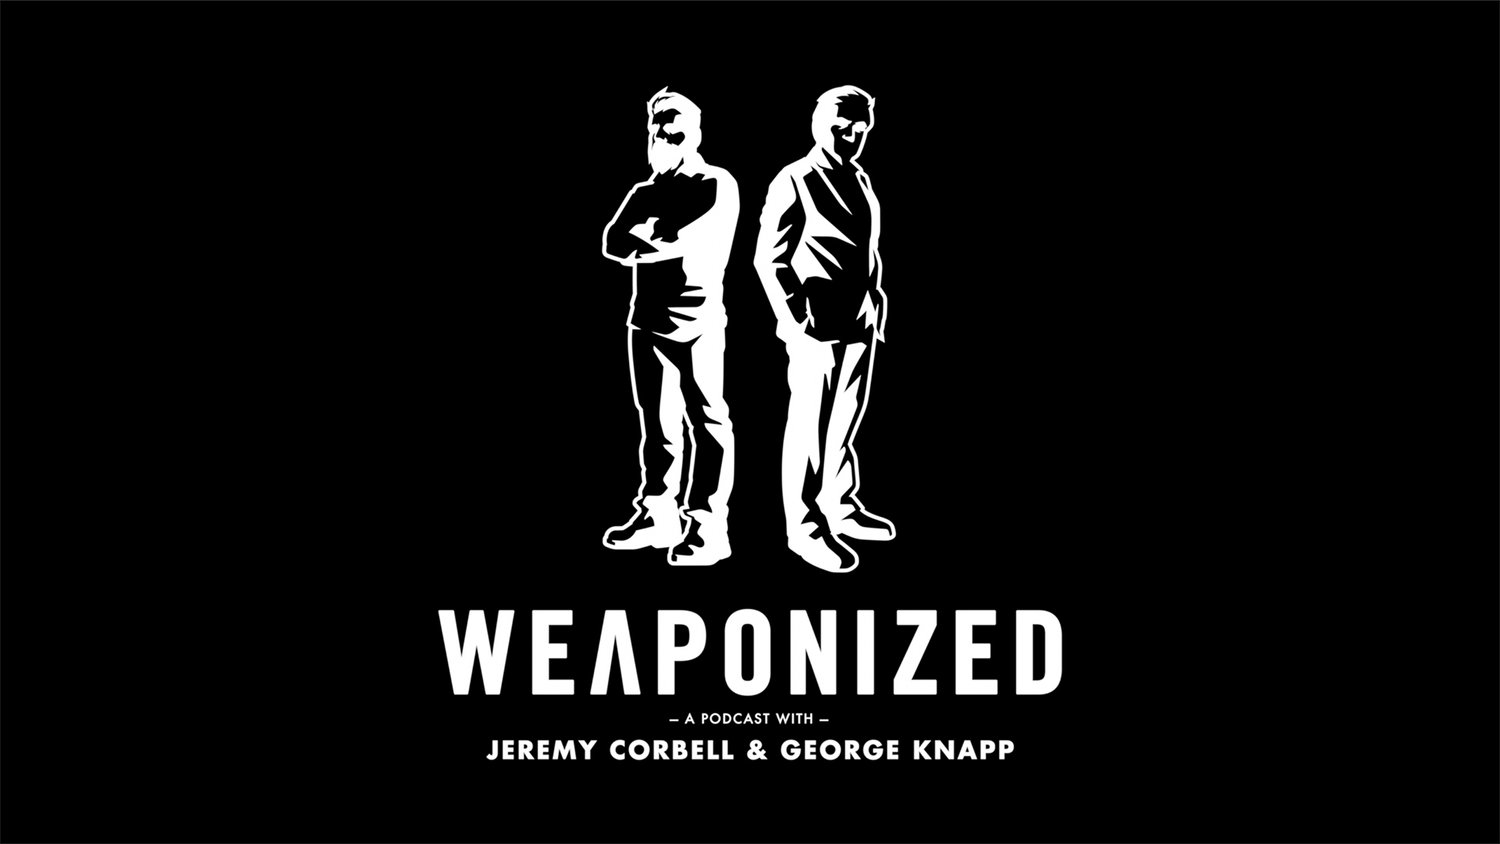 www.weaponizedpodcast.com